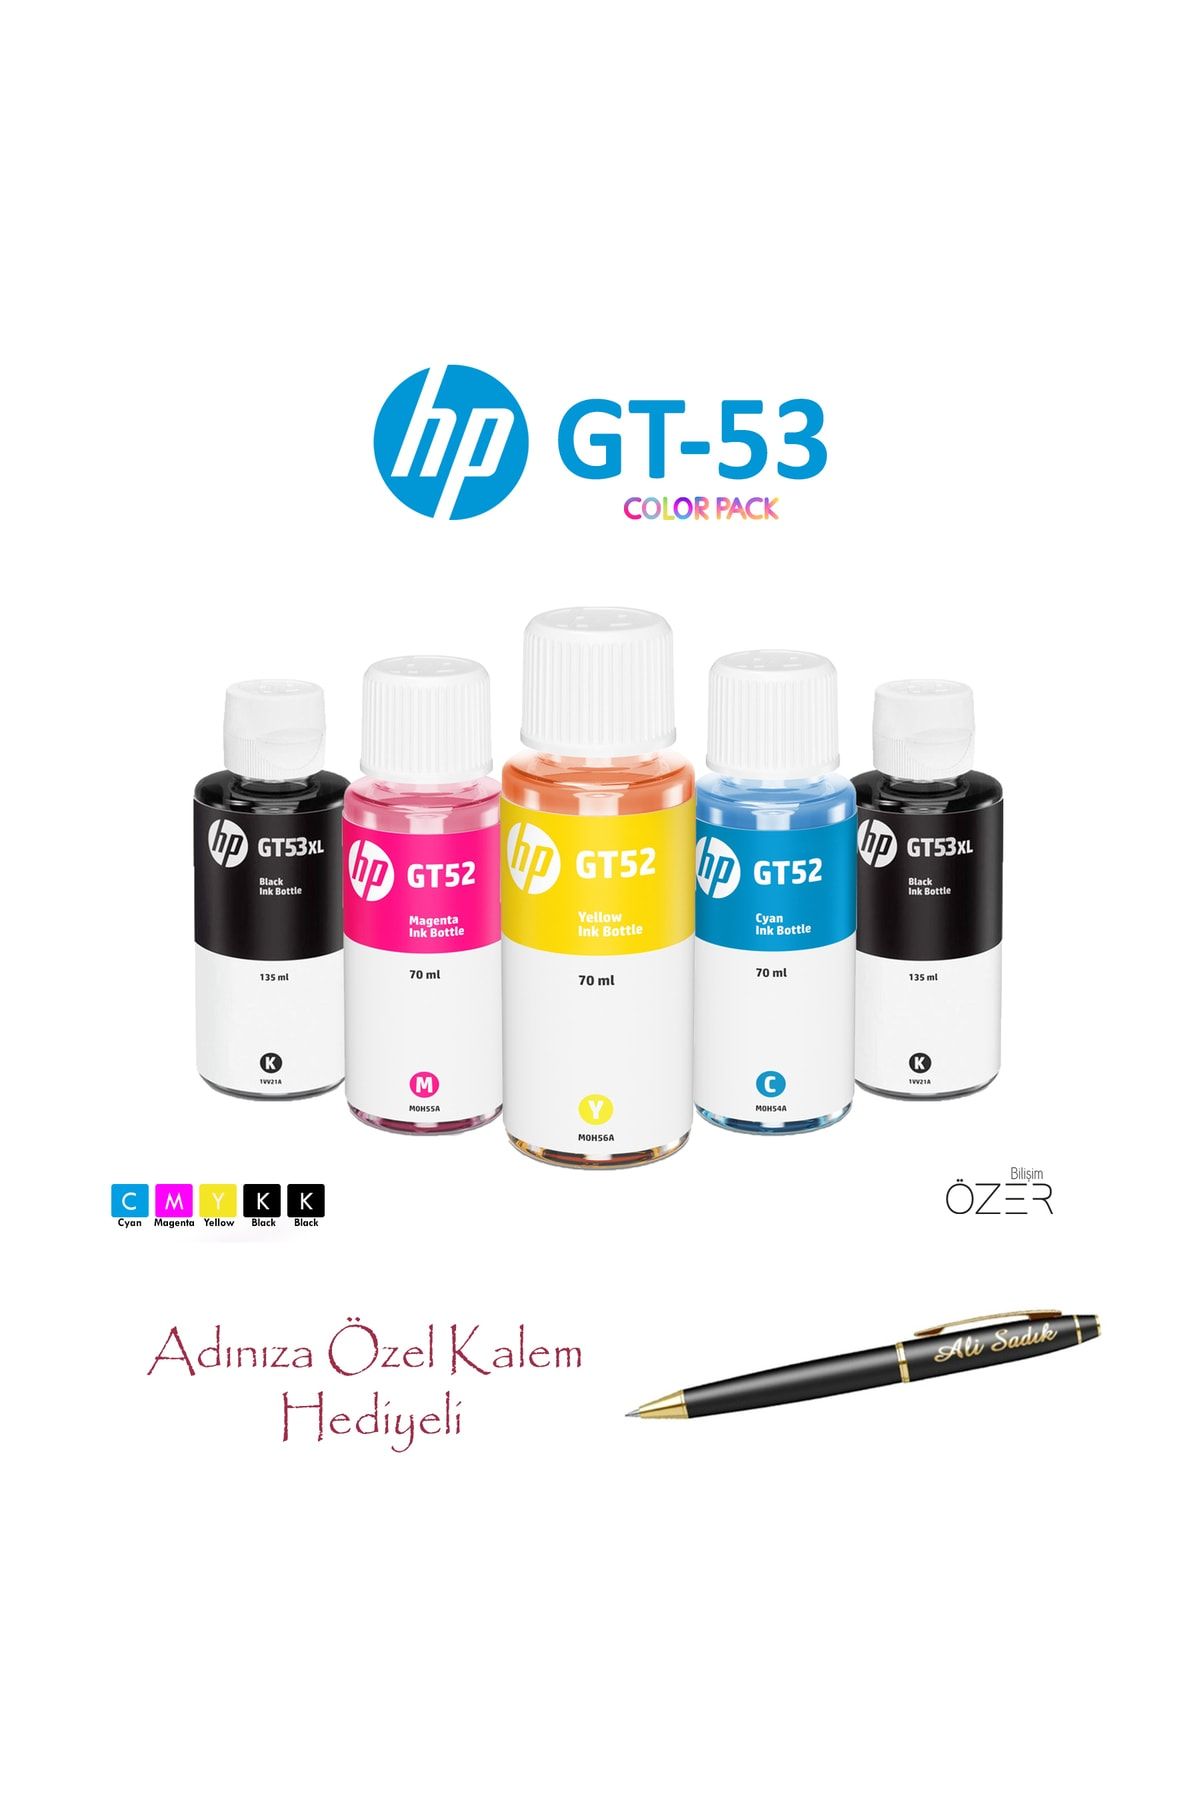 HP Gt53xl Gt5810 Uyumlu Dolum Seti +1 Siyah Mürekkep + Isme Özel Kalem Ve Defter Hediyeli